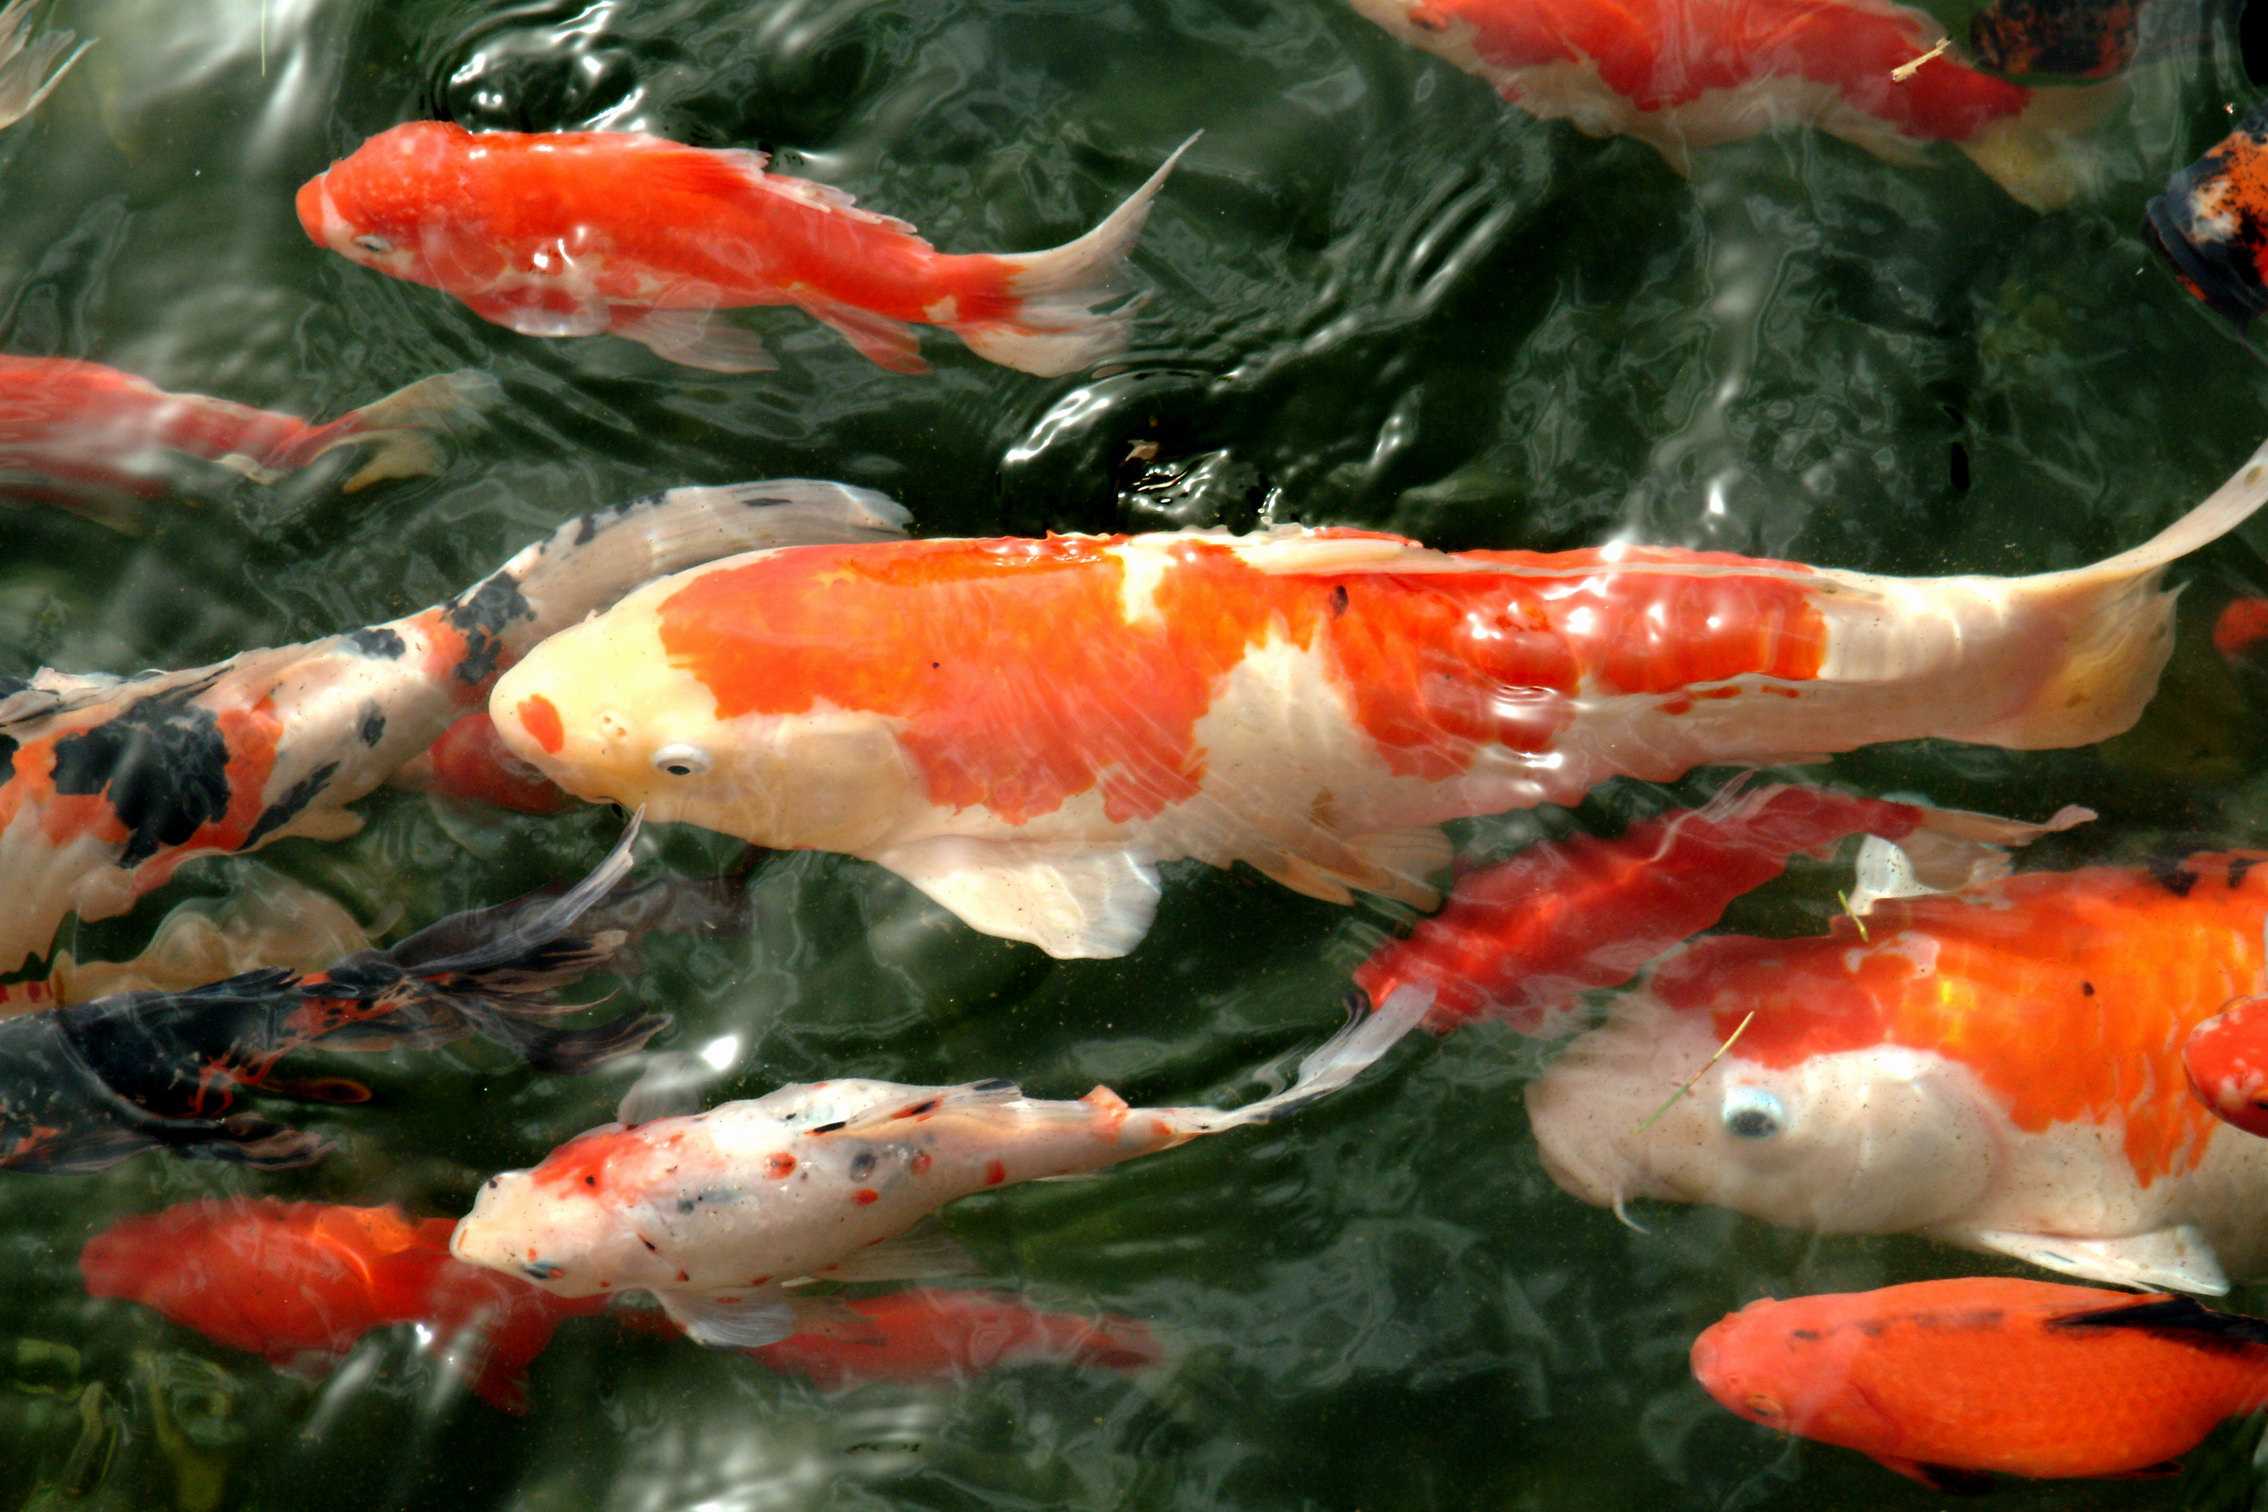 ขายปลาสวยงาม “Koi Mart” นำเข้าปลาคาร์ฟญี่ปุ่นแท้  จากความชอบสู่อาชีพสร้างรายได้ - SMELeader